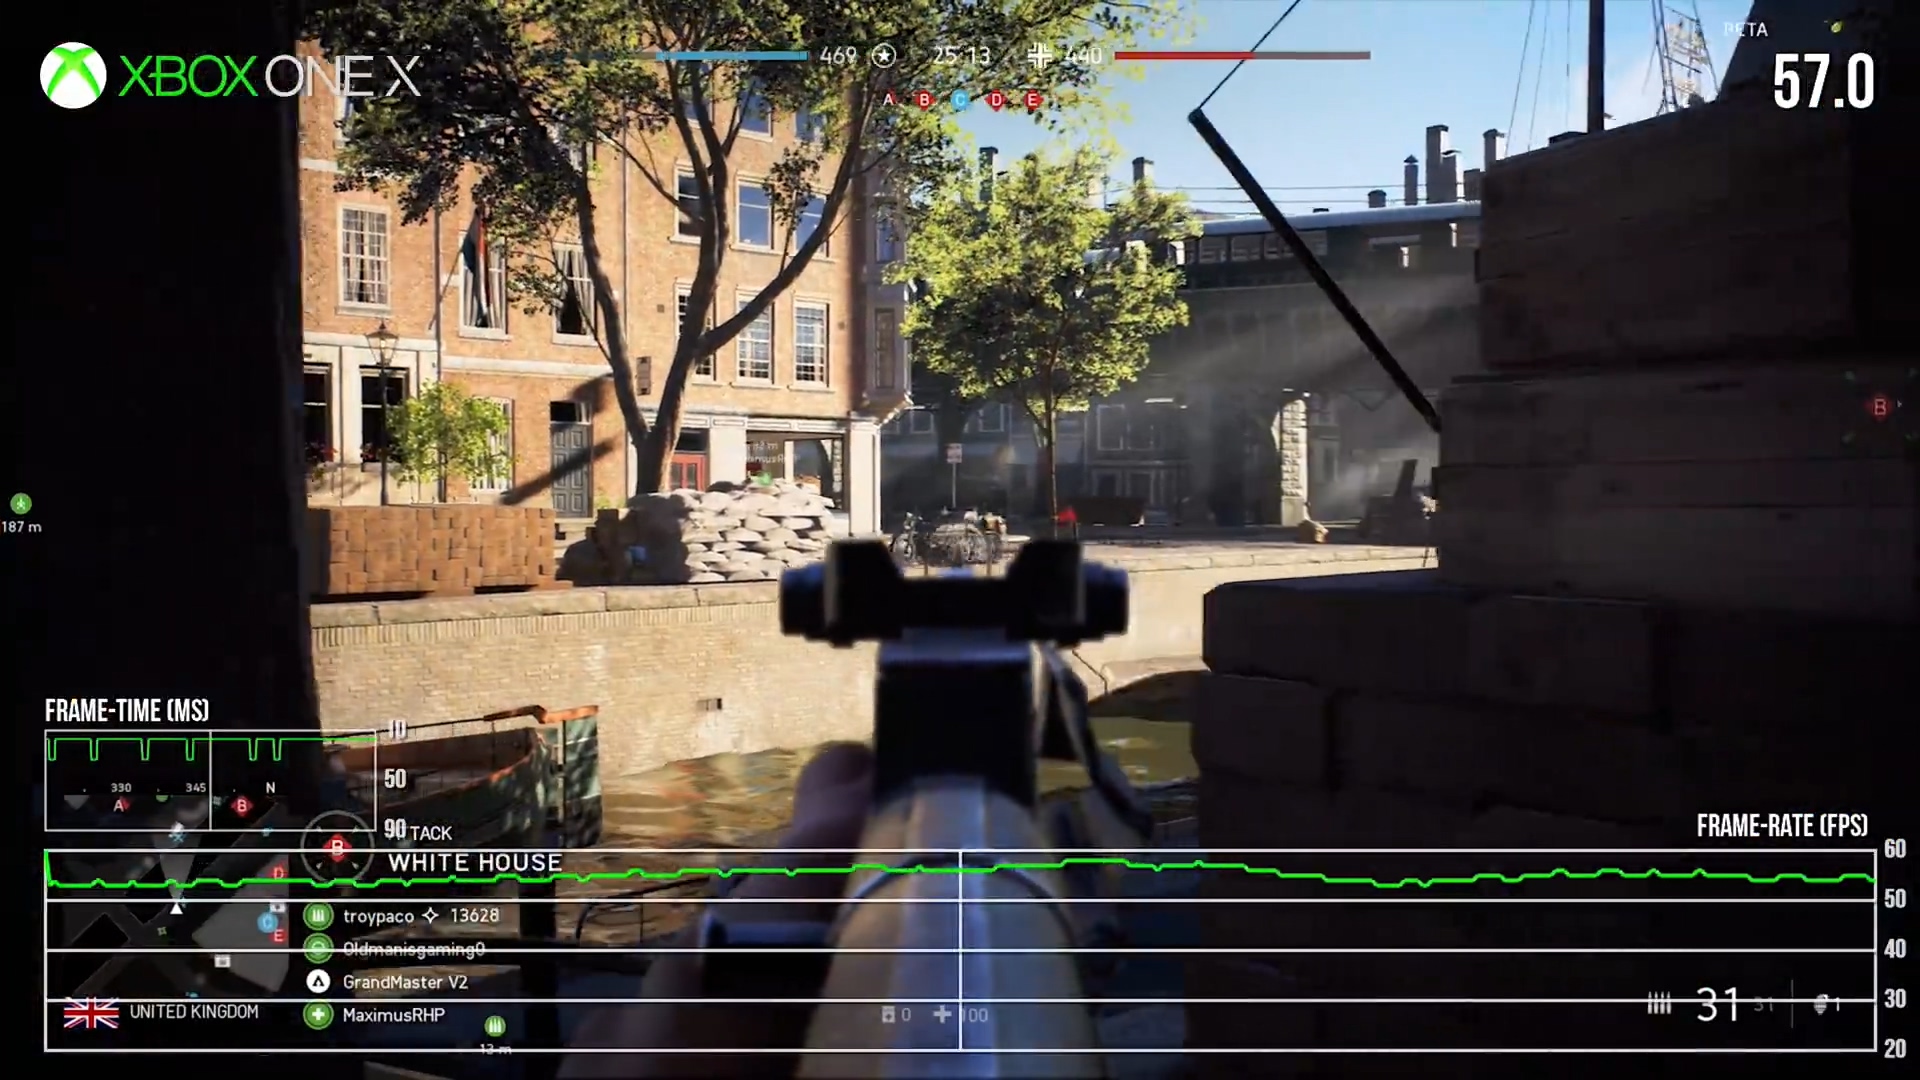 《战天5》BETA：PS4 Pro战Xbox One X辩乌率、帧数剖析